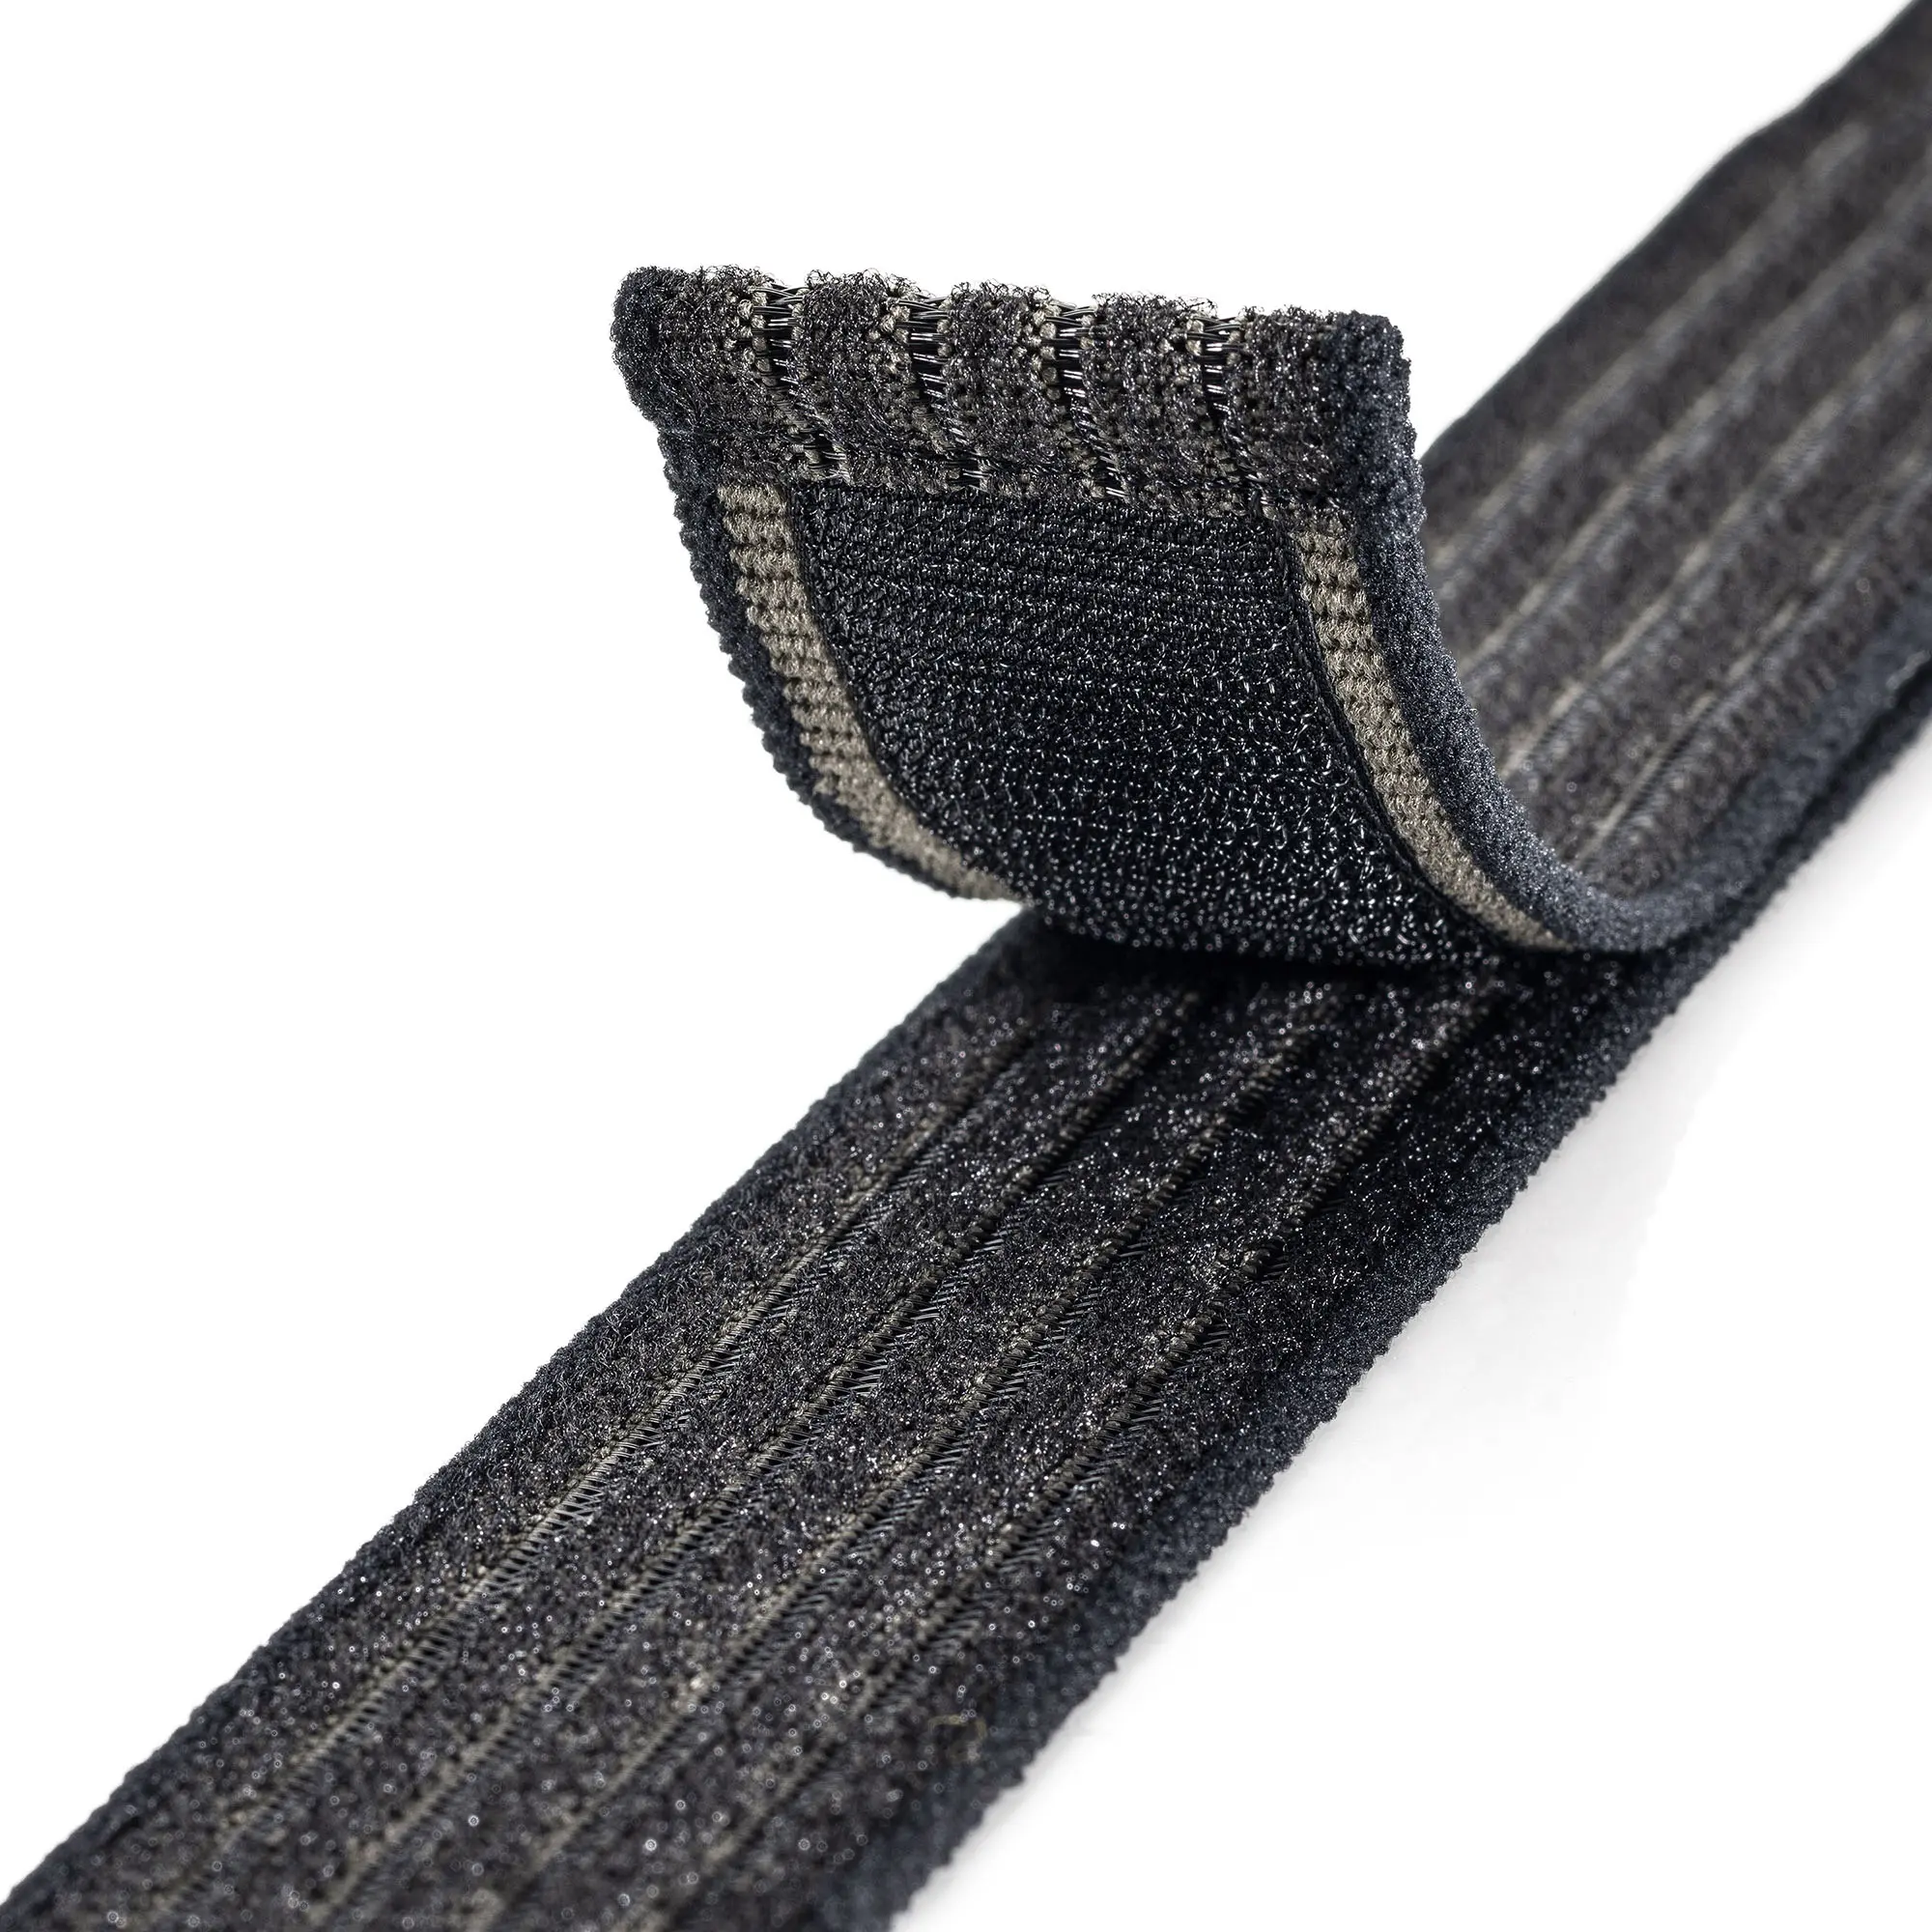 Produktfoto eines schwarz- und olivfarbenen und elastischen Klettband auf weißem Hintergrund, der Teil mit dem Klett ist nach oben gebogen